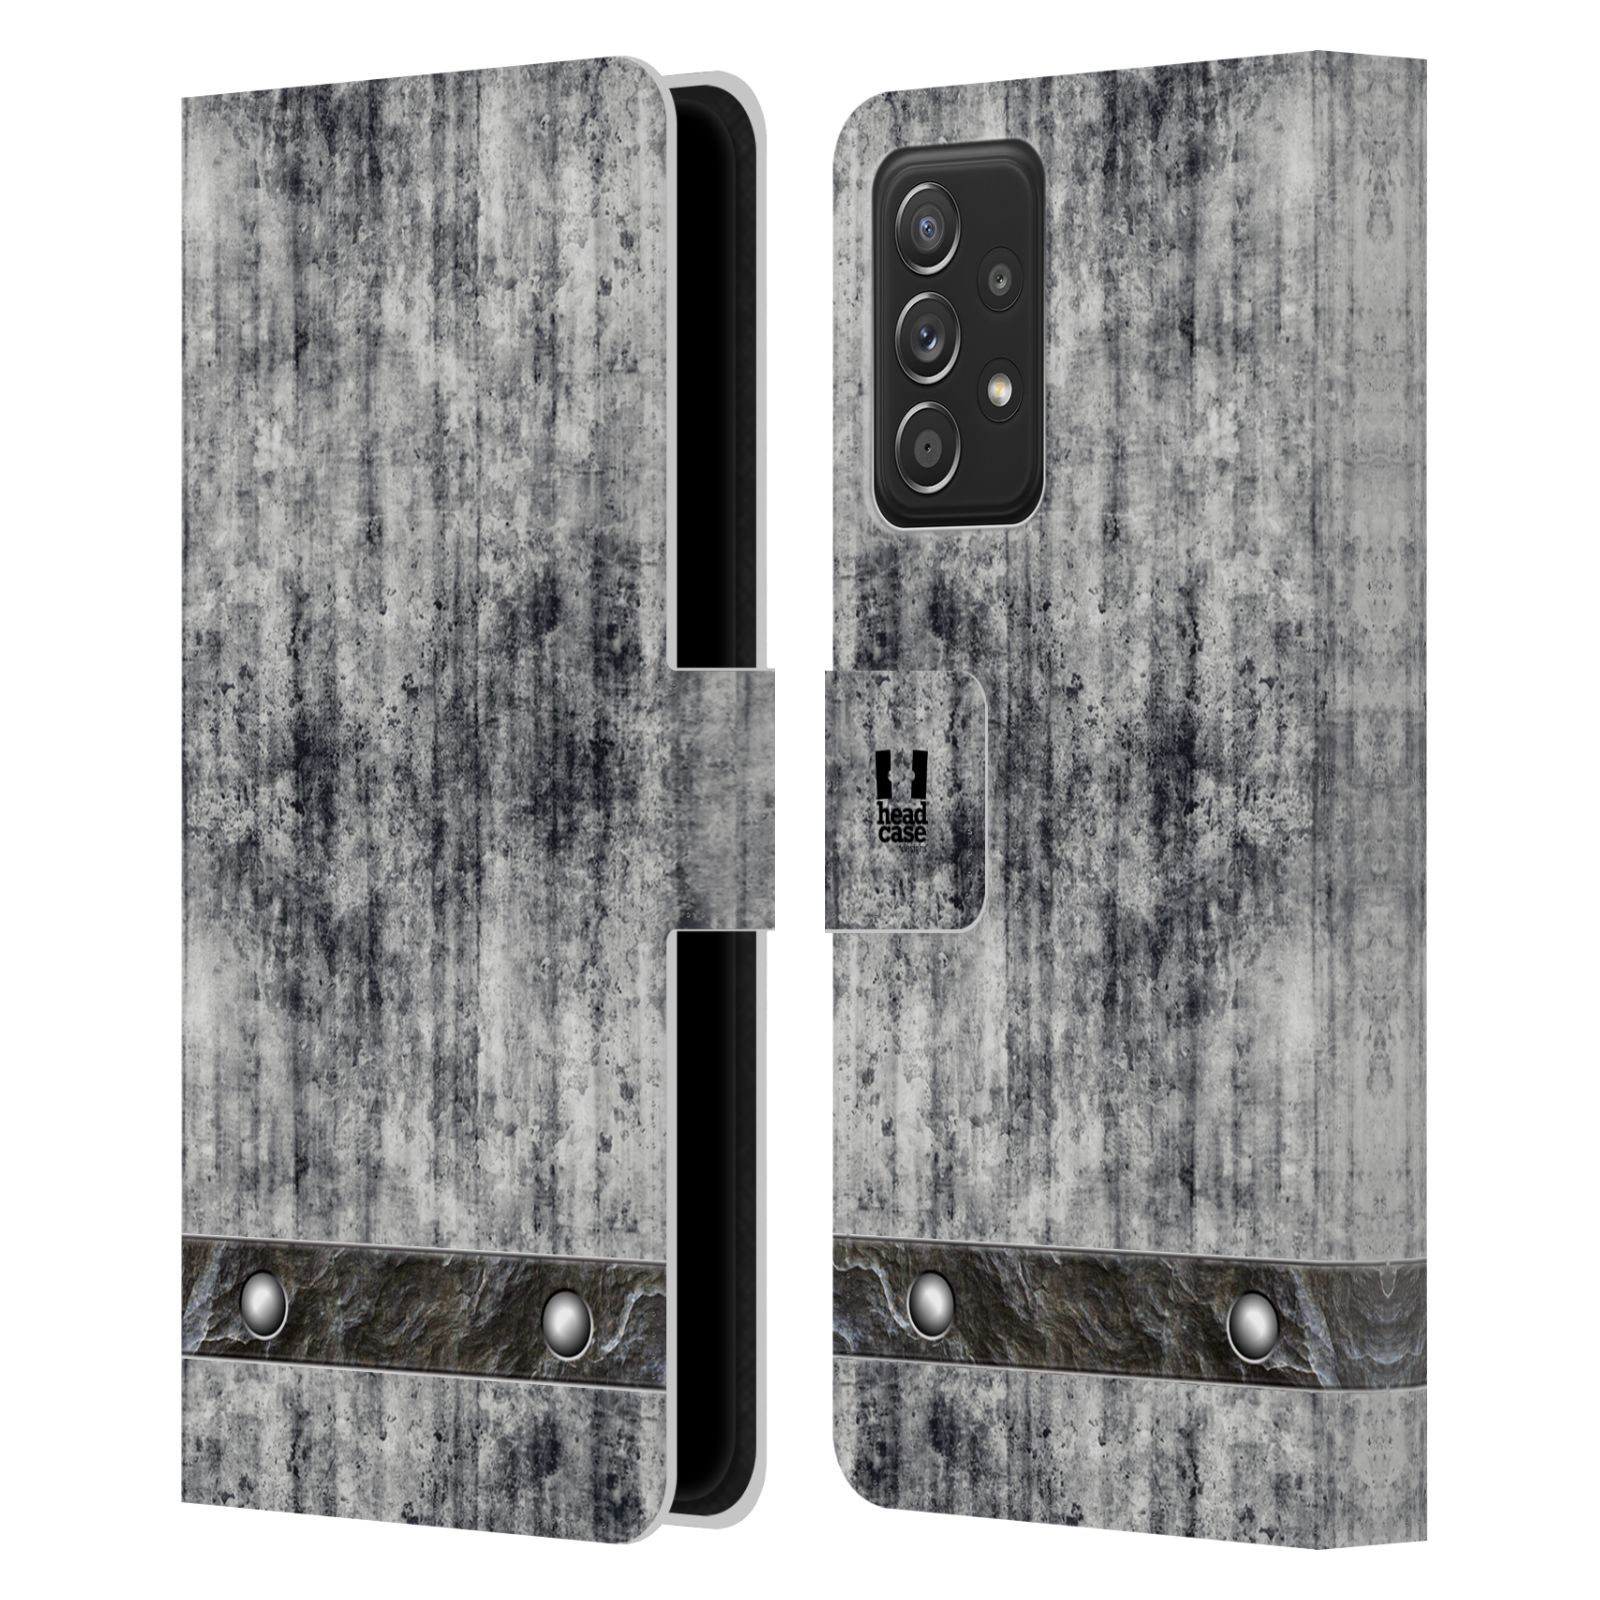 Pouzdro HEAD CASE na mobil Samsung Galaxy A52 / A52 5G / A52s 5G stavební textury beton šedá